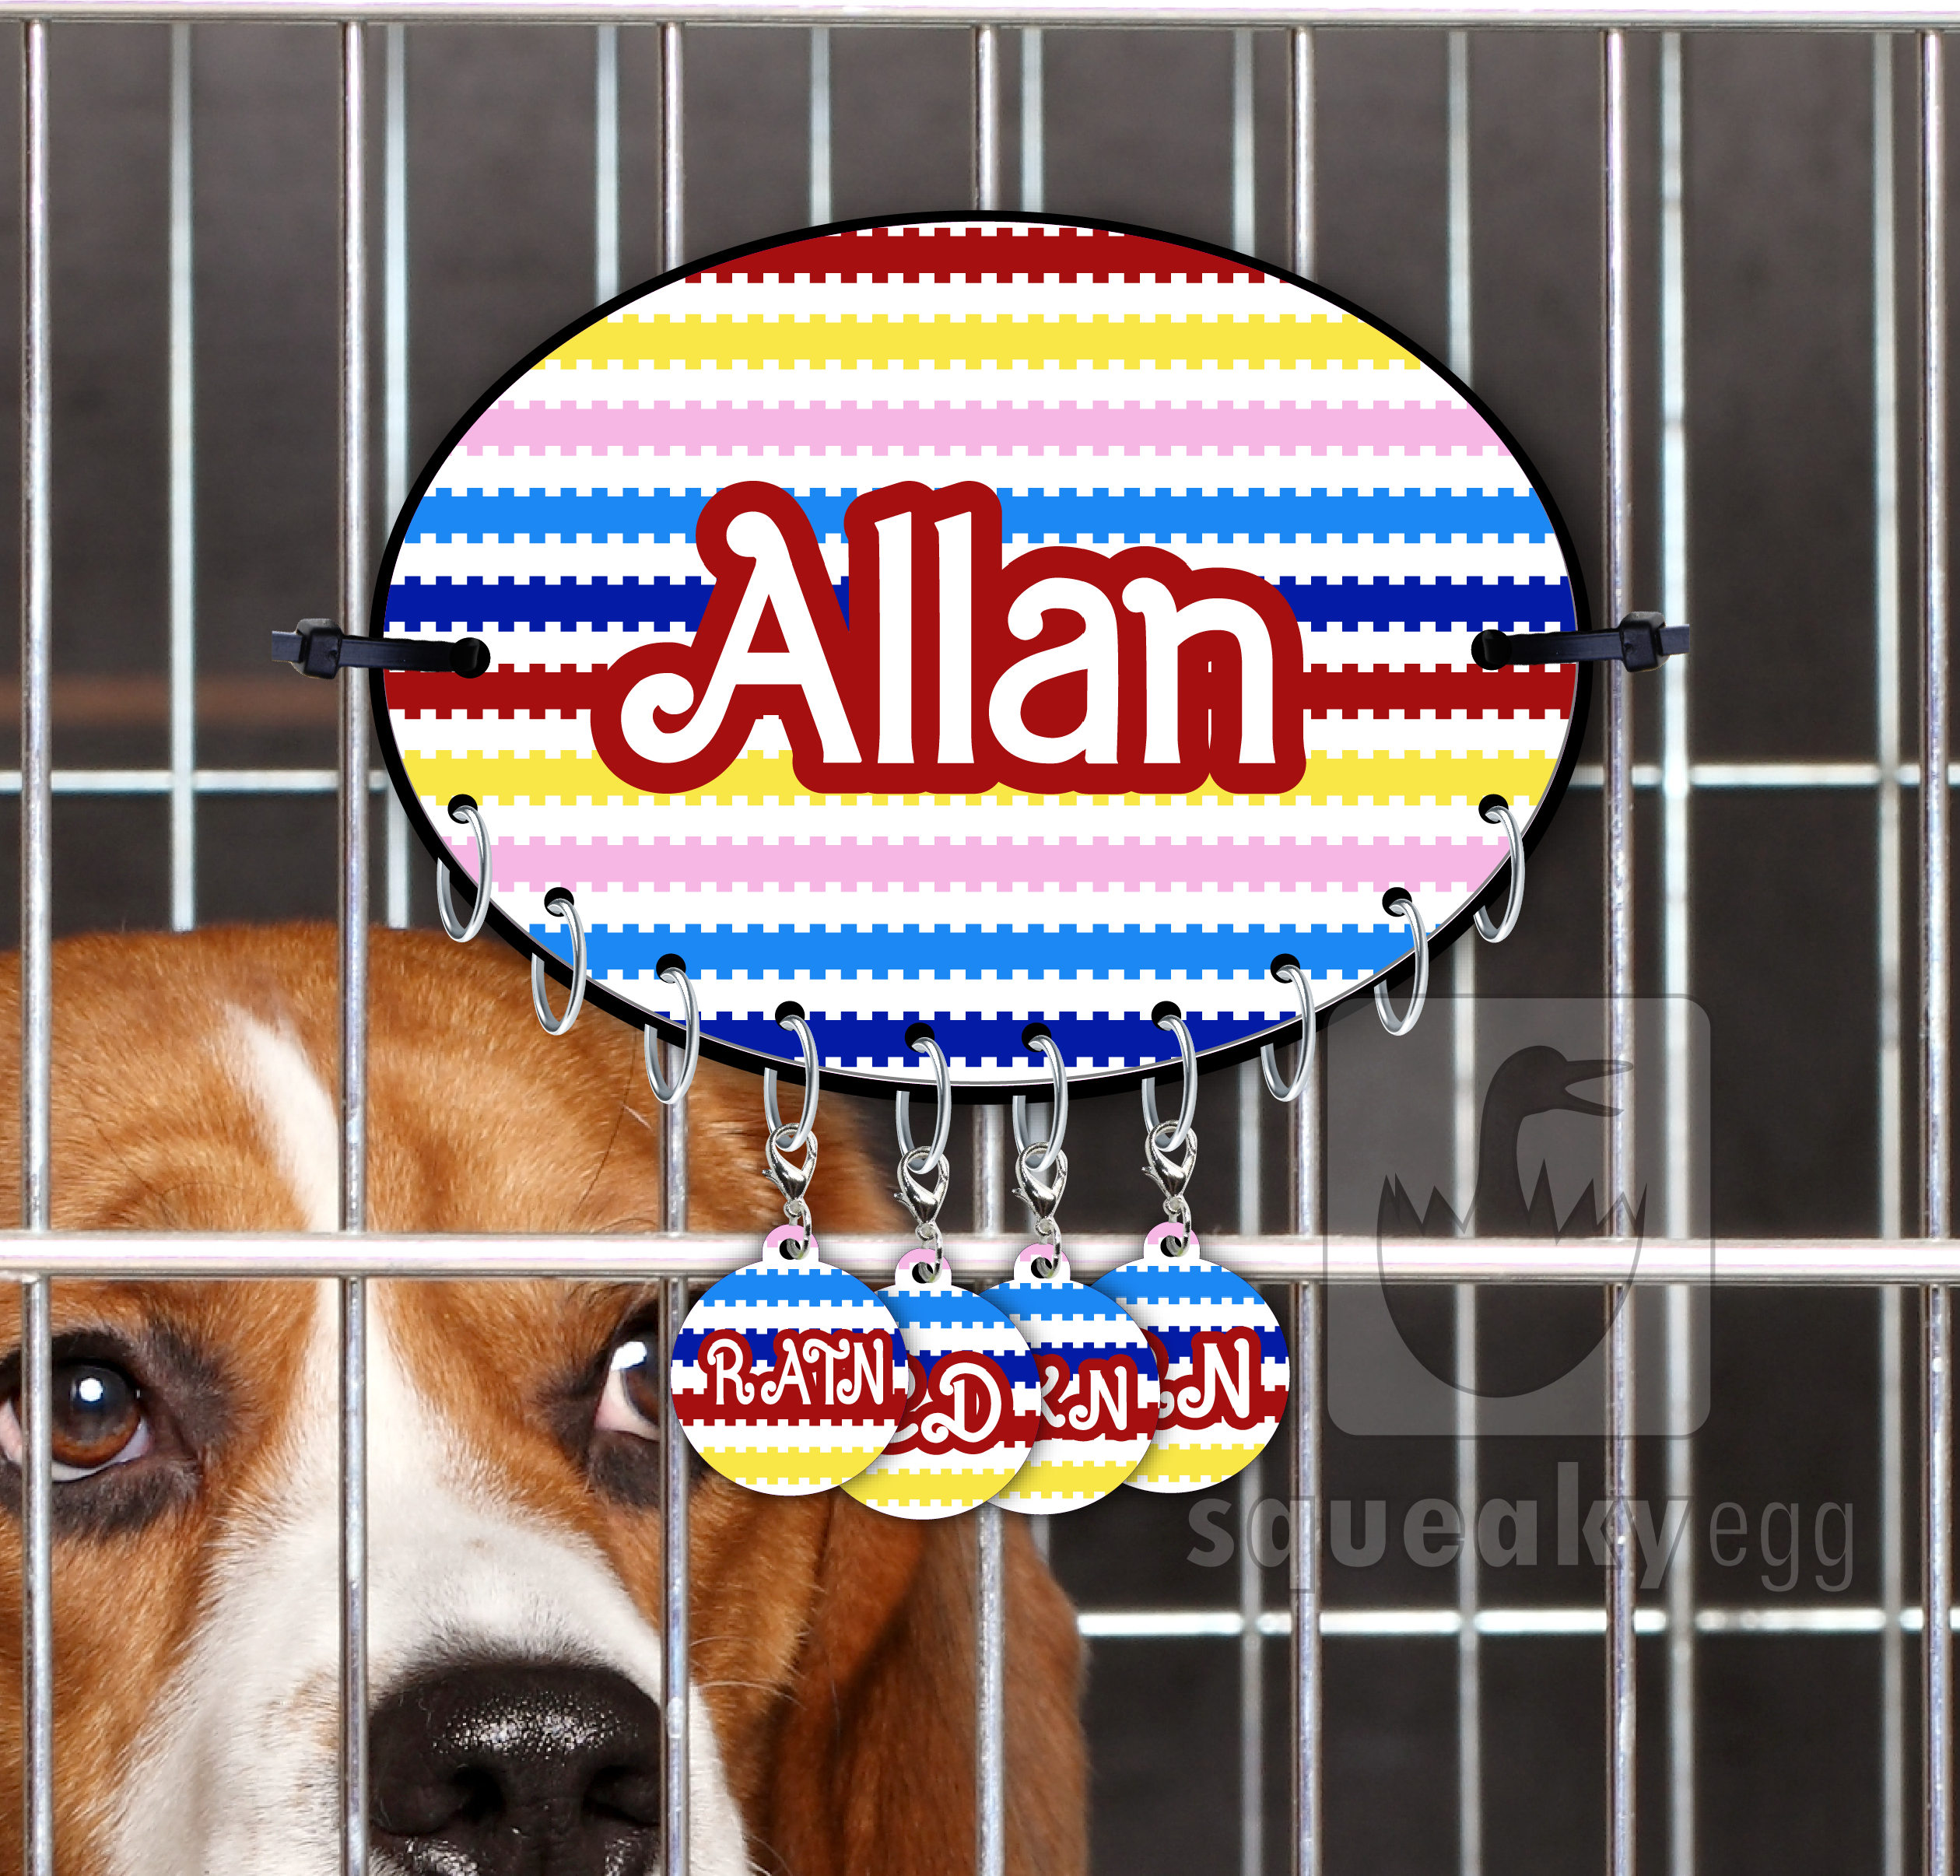 Allan - Title Charm